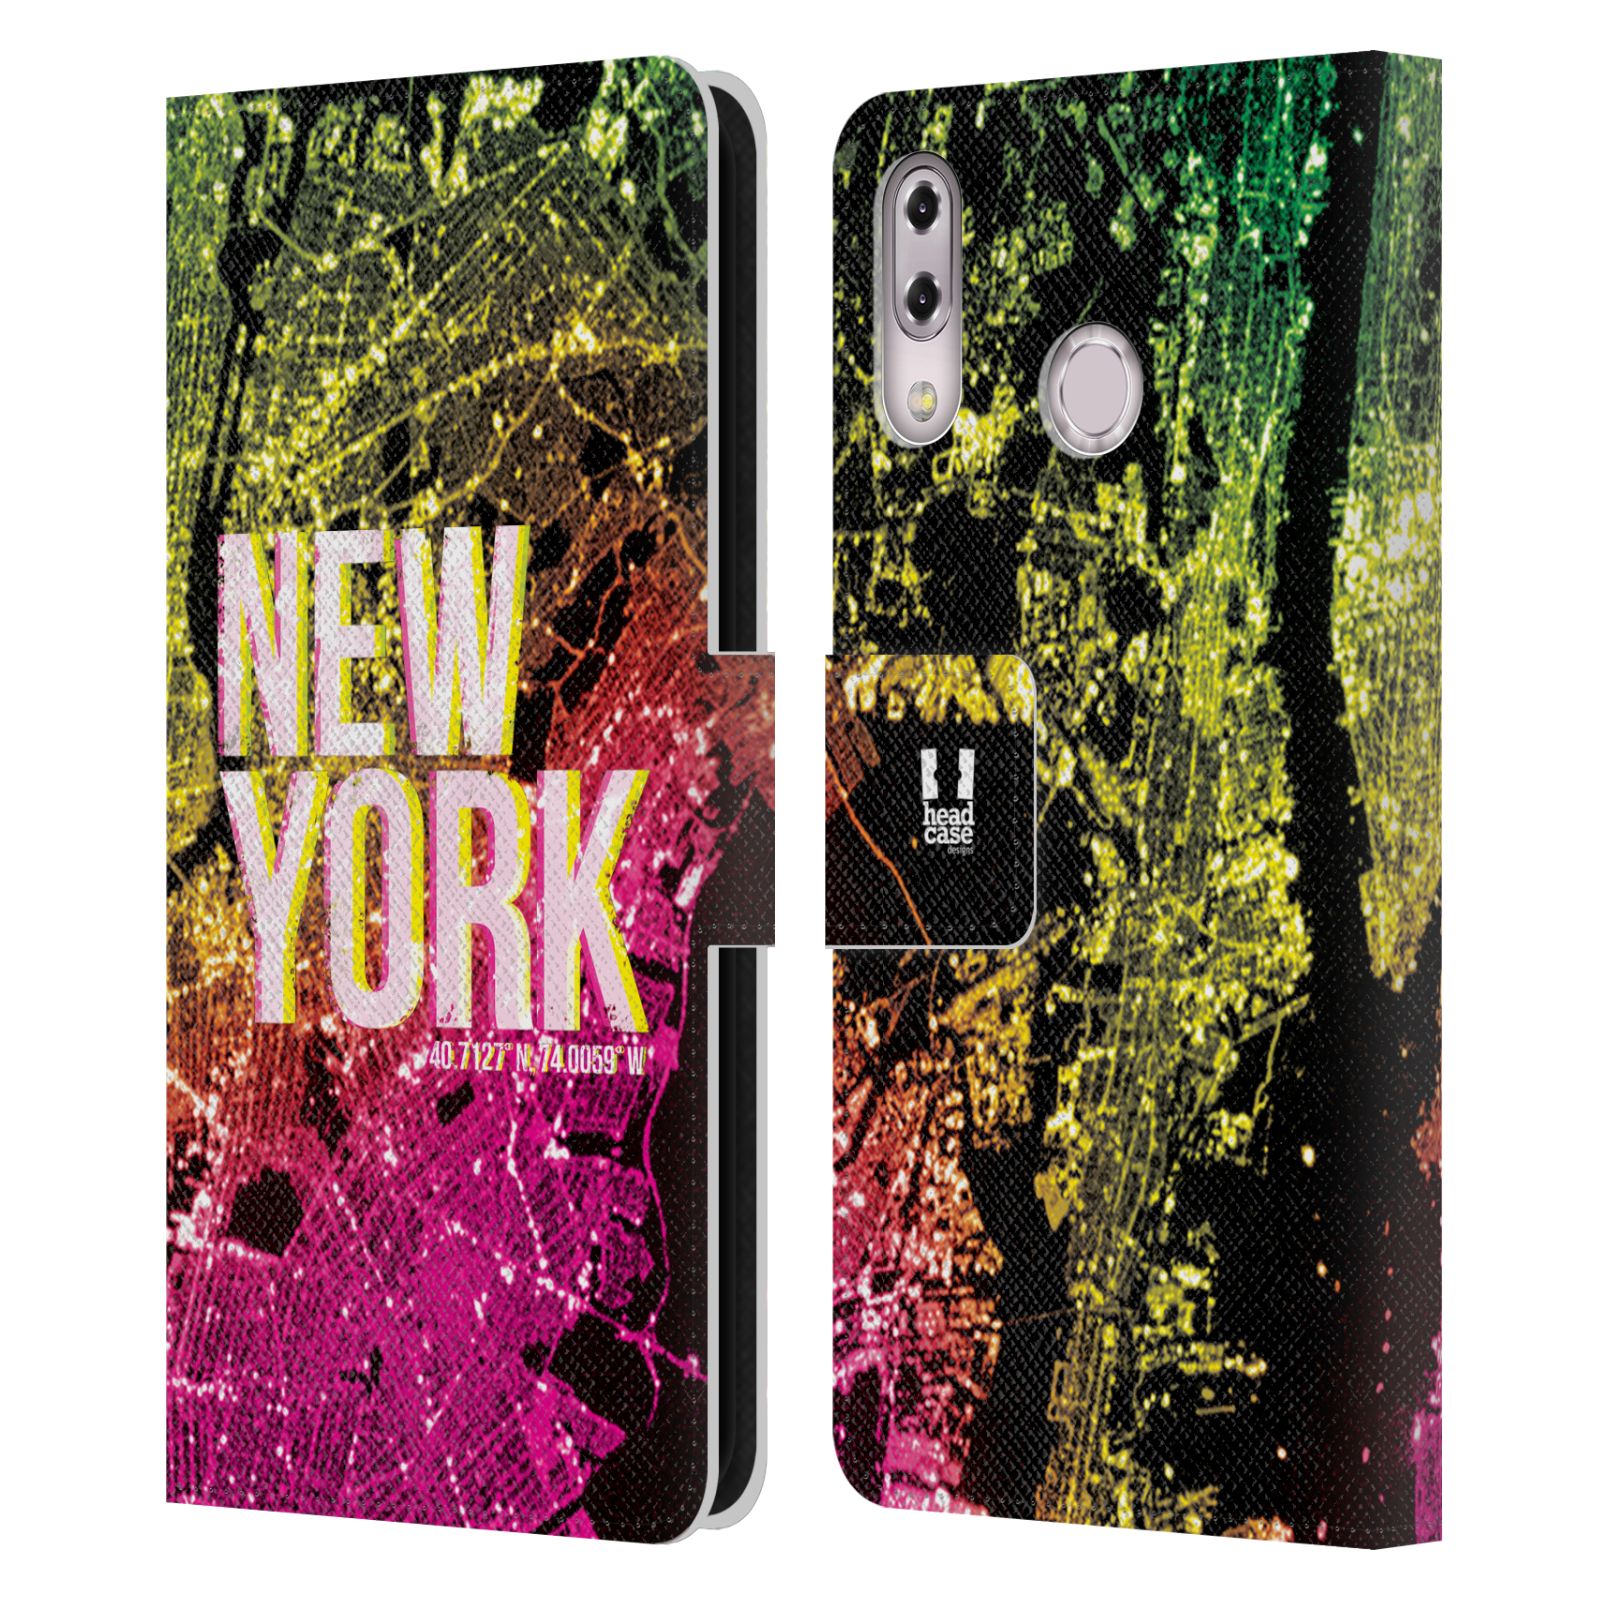 Pouzdro na mobil Asus Zenfone 5z ZS620KL / 5 ZE620KL - Head Case - NEW YORK pohled z vesmíru